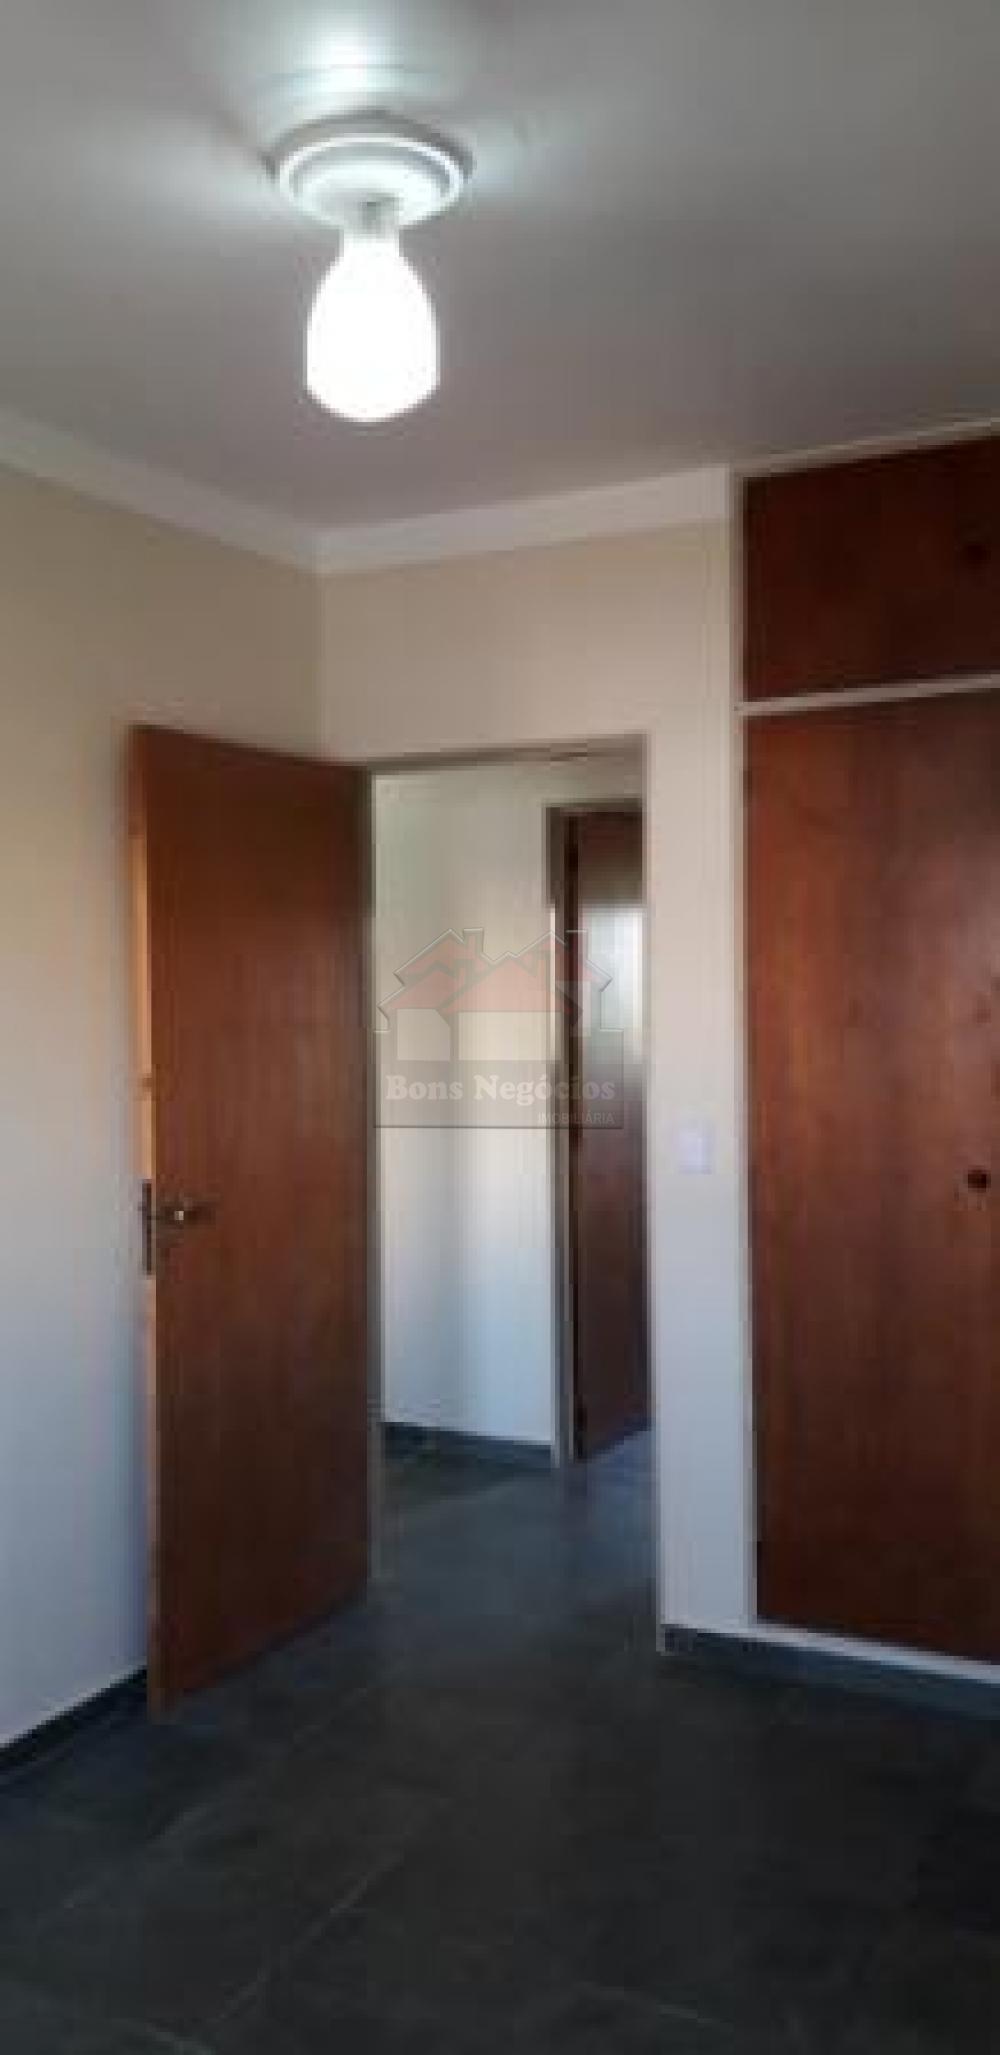 Comprar Apartamento / Padrão sem Condomínio em Ribeirão Preto R$ 280.000,00 - Foto 5